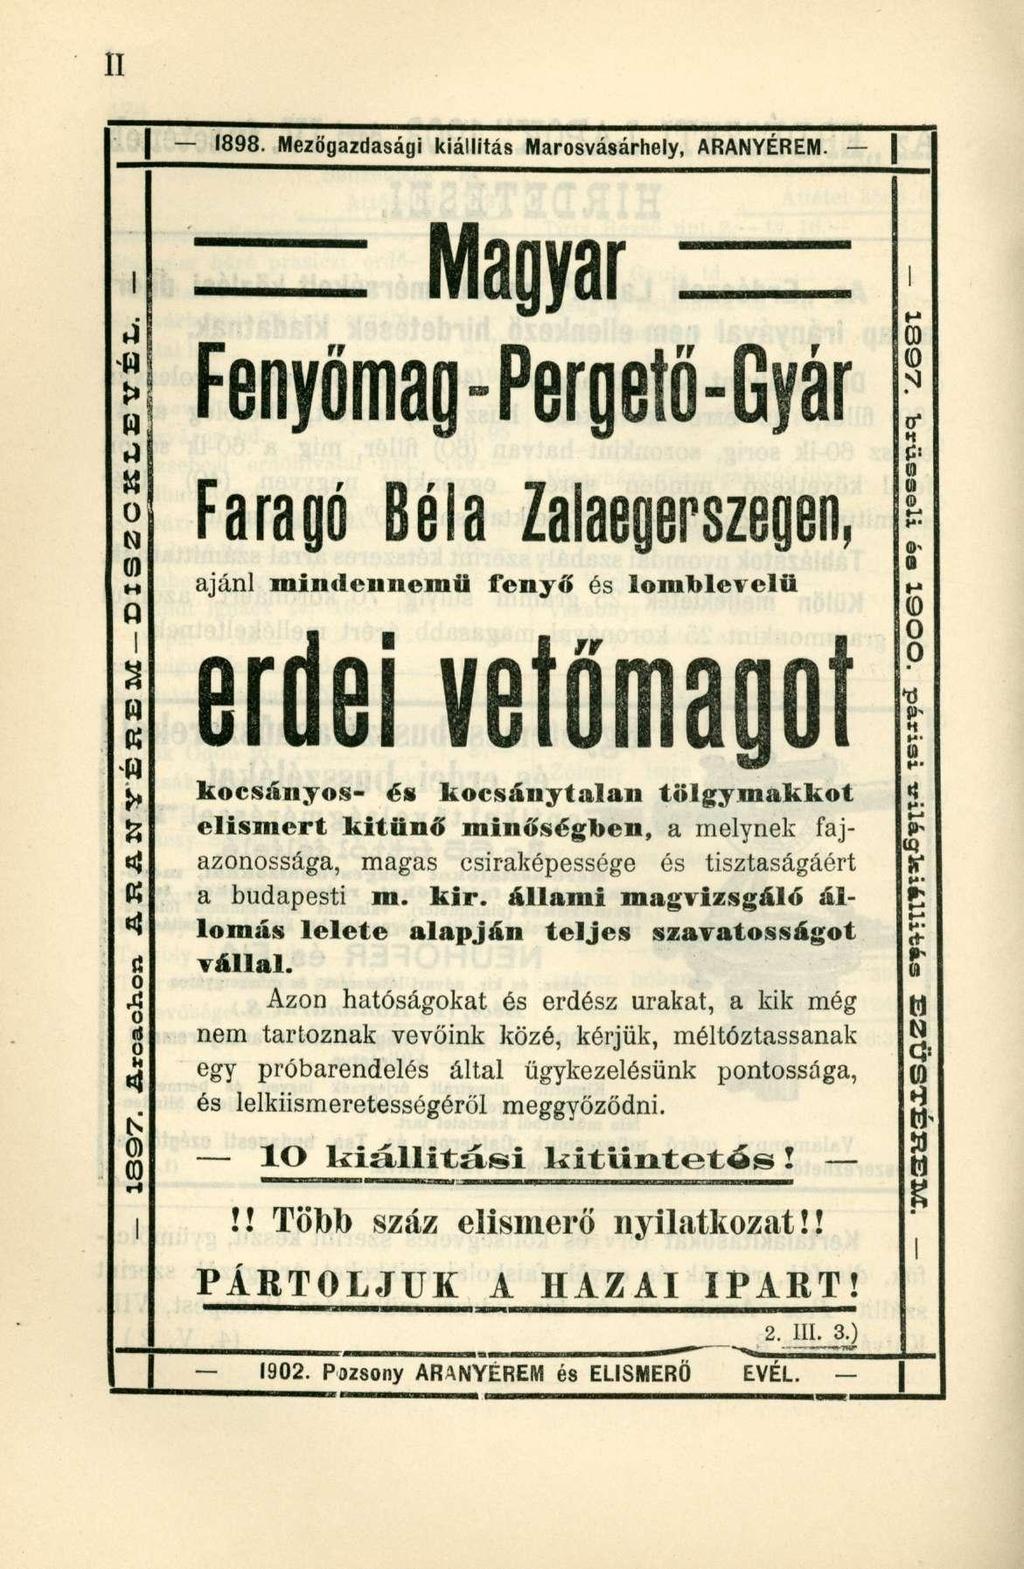 1898. Mezőgazdasági kiállítás Marosvásárhely, ARANYÉREM.